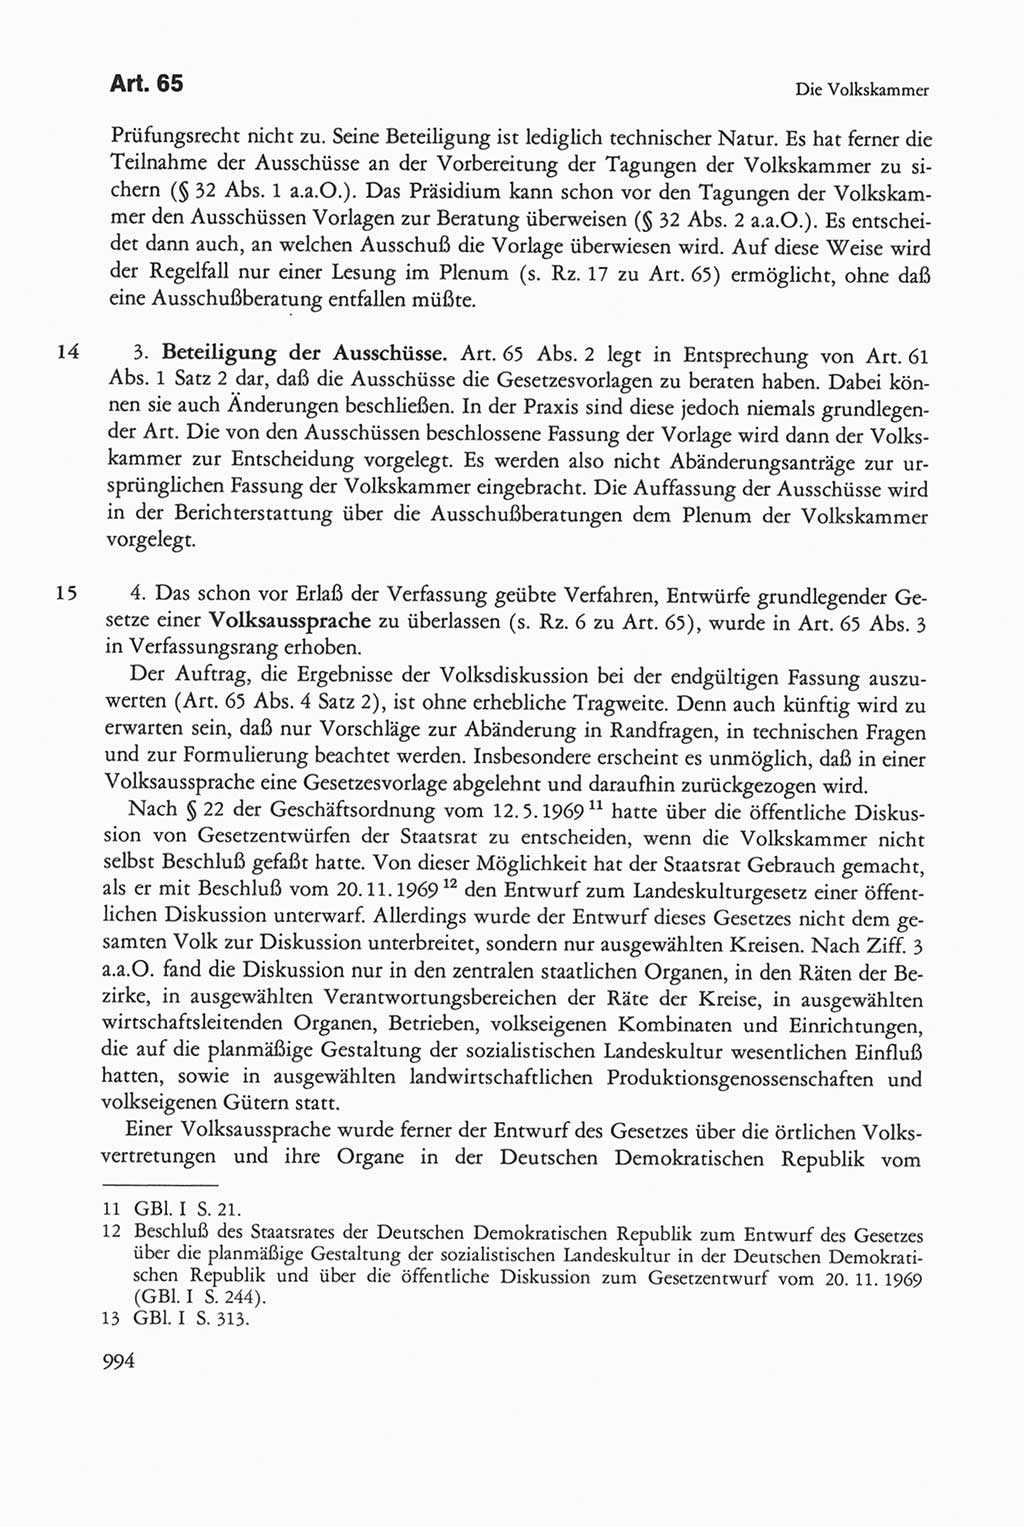 Die sozialistische Verfassung der Deutschen Demokratischen Republik (DDR), Kommentar mit einem Nachtrag 1997, Seite 994 (Soz. Verf. DDR Komm. Nachtr. 1997, S. 994)